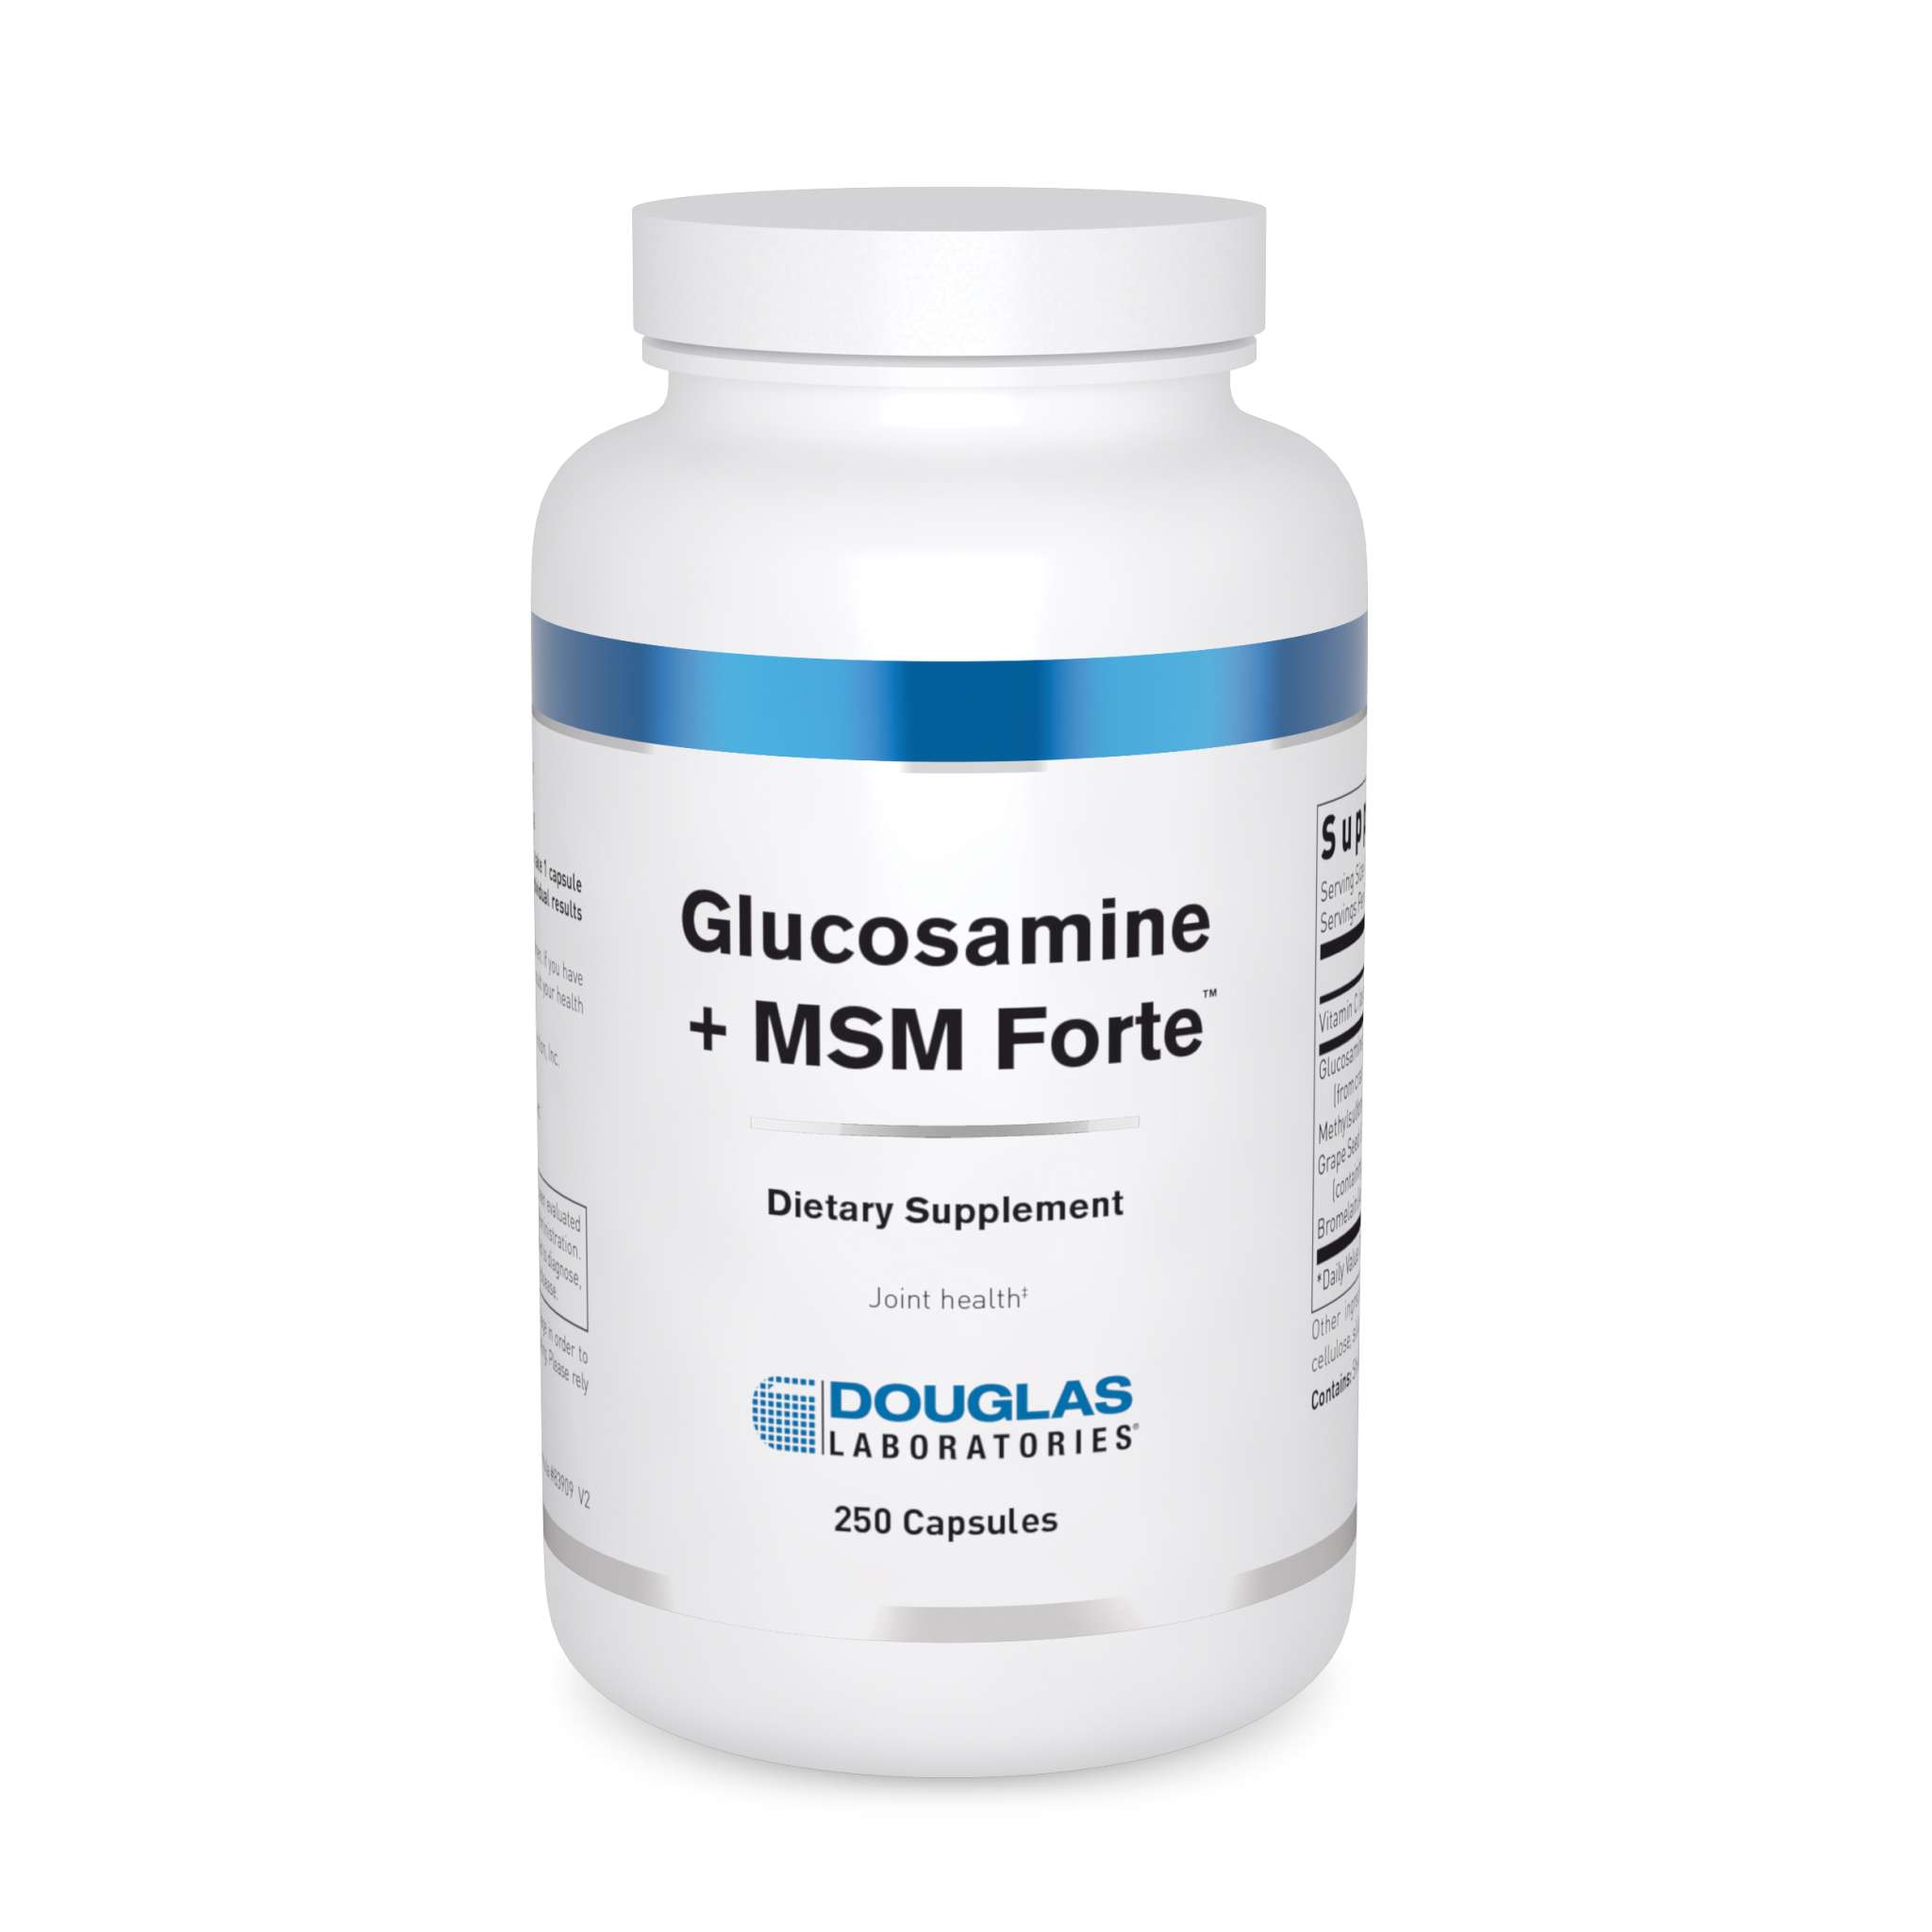 Douglas Laboratories - Glucosamine + Msm Forte